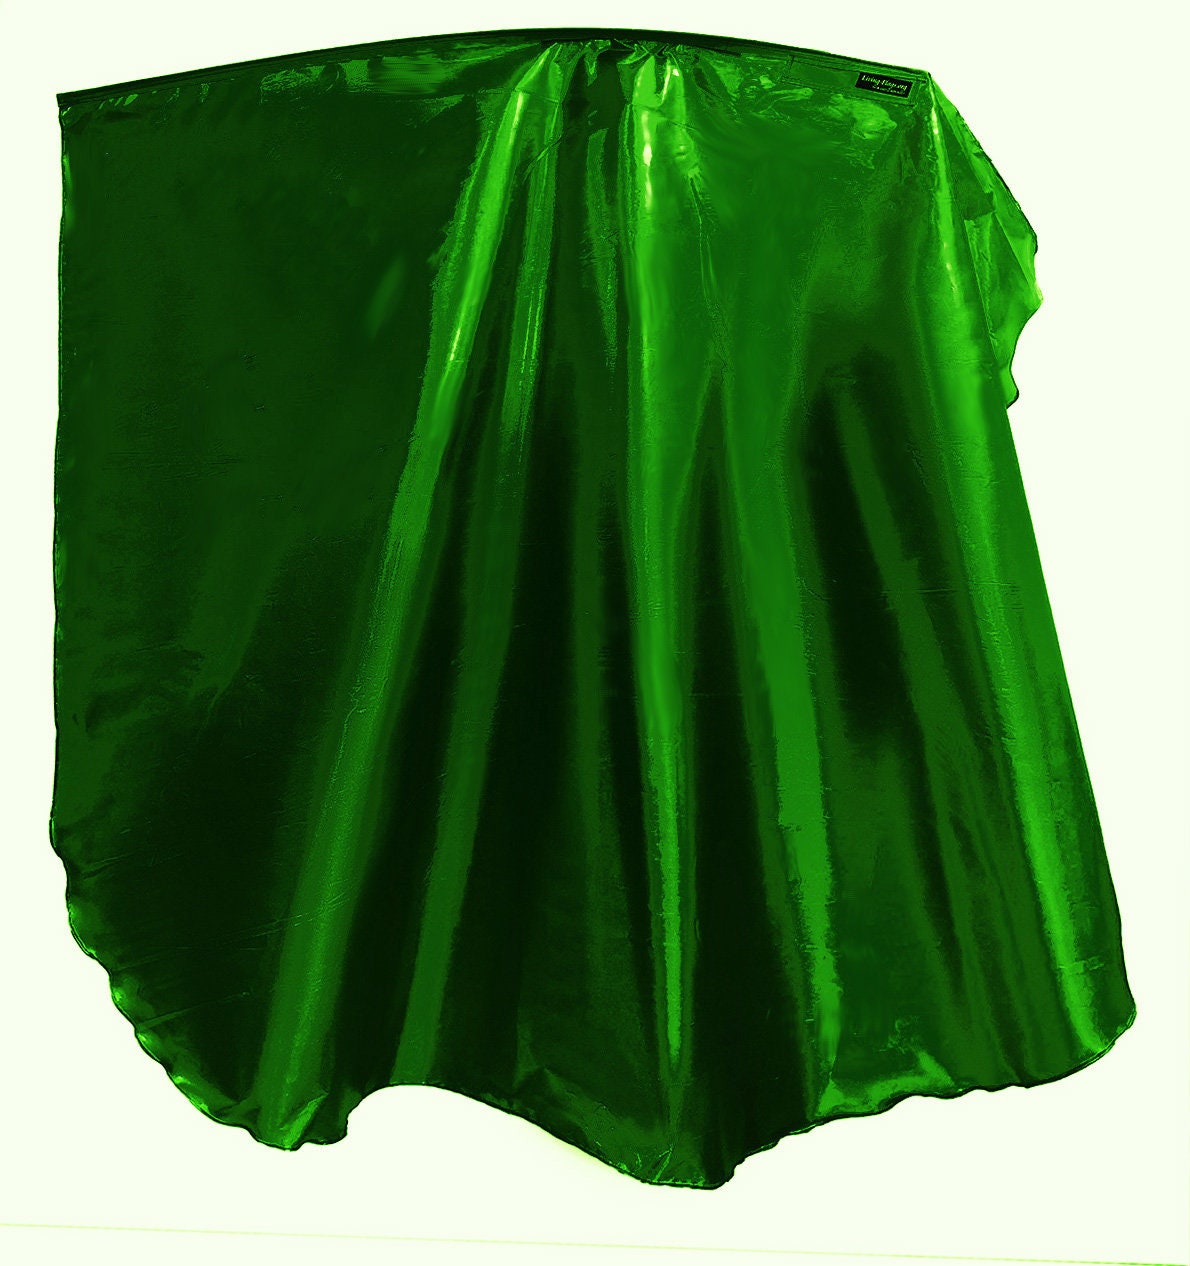 WXLL-Quill - Liquid Metal Emerald Green Wing Flag - 40" Flexibler Stab